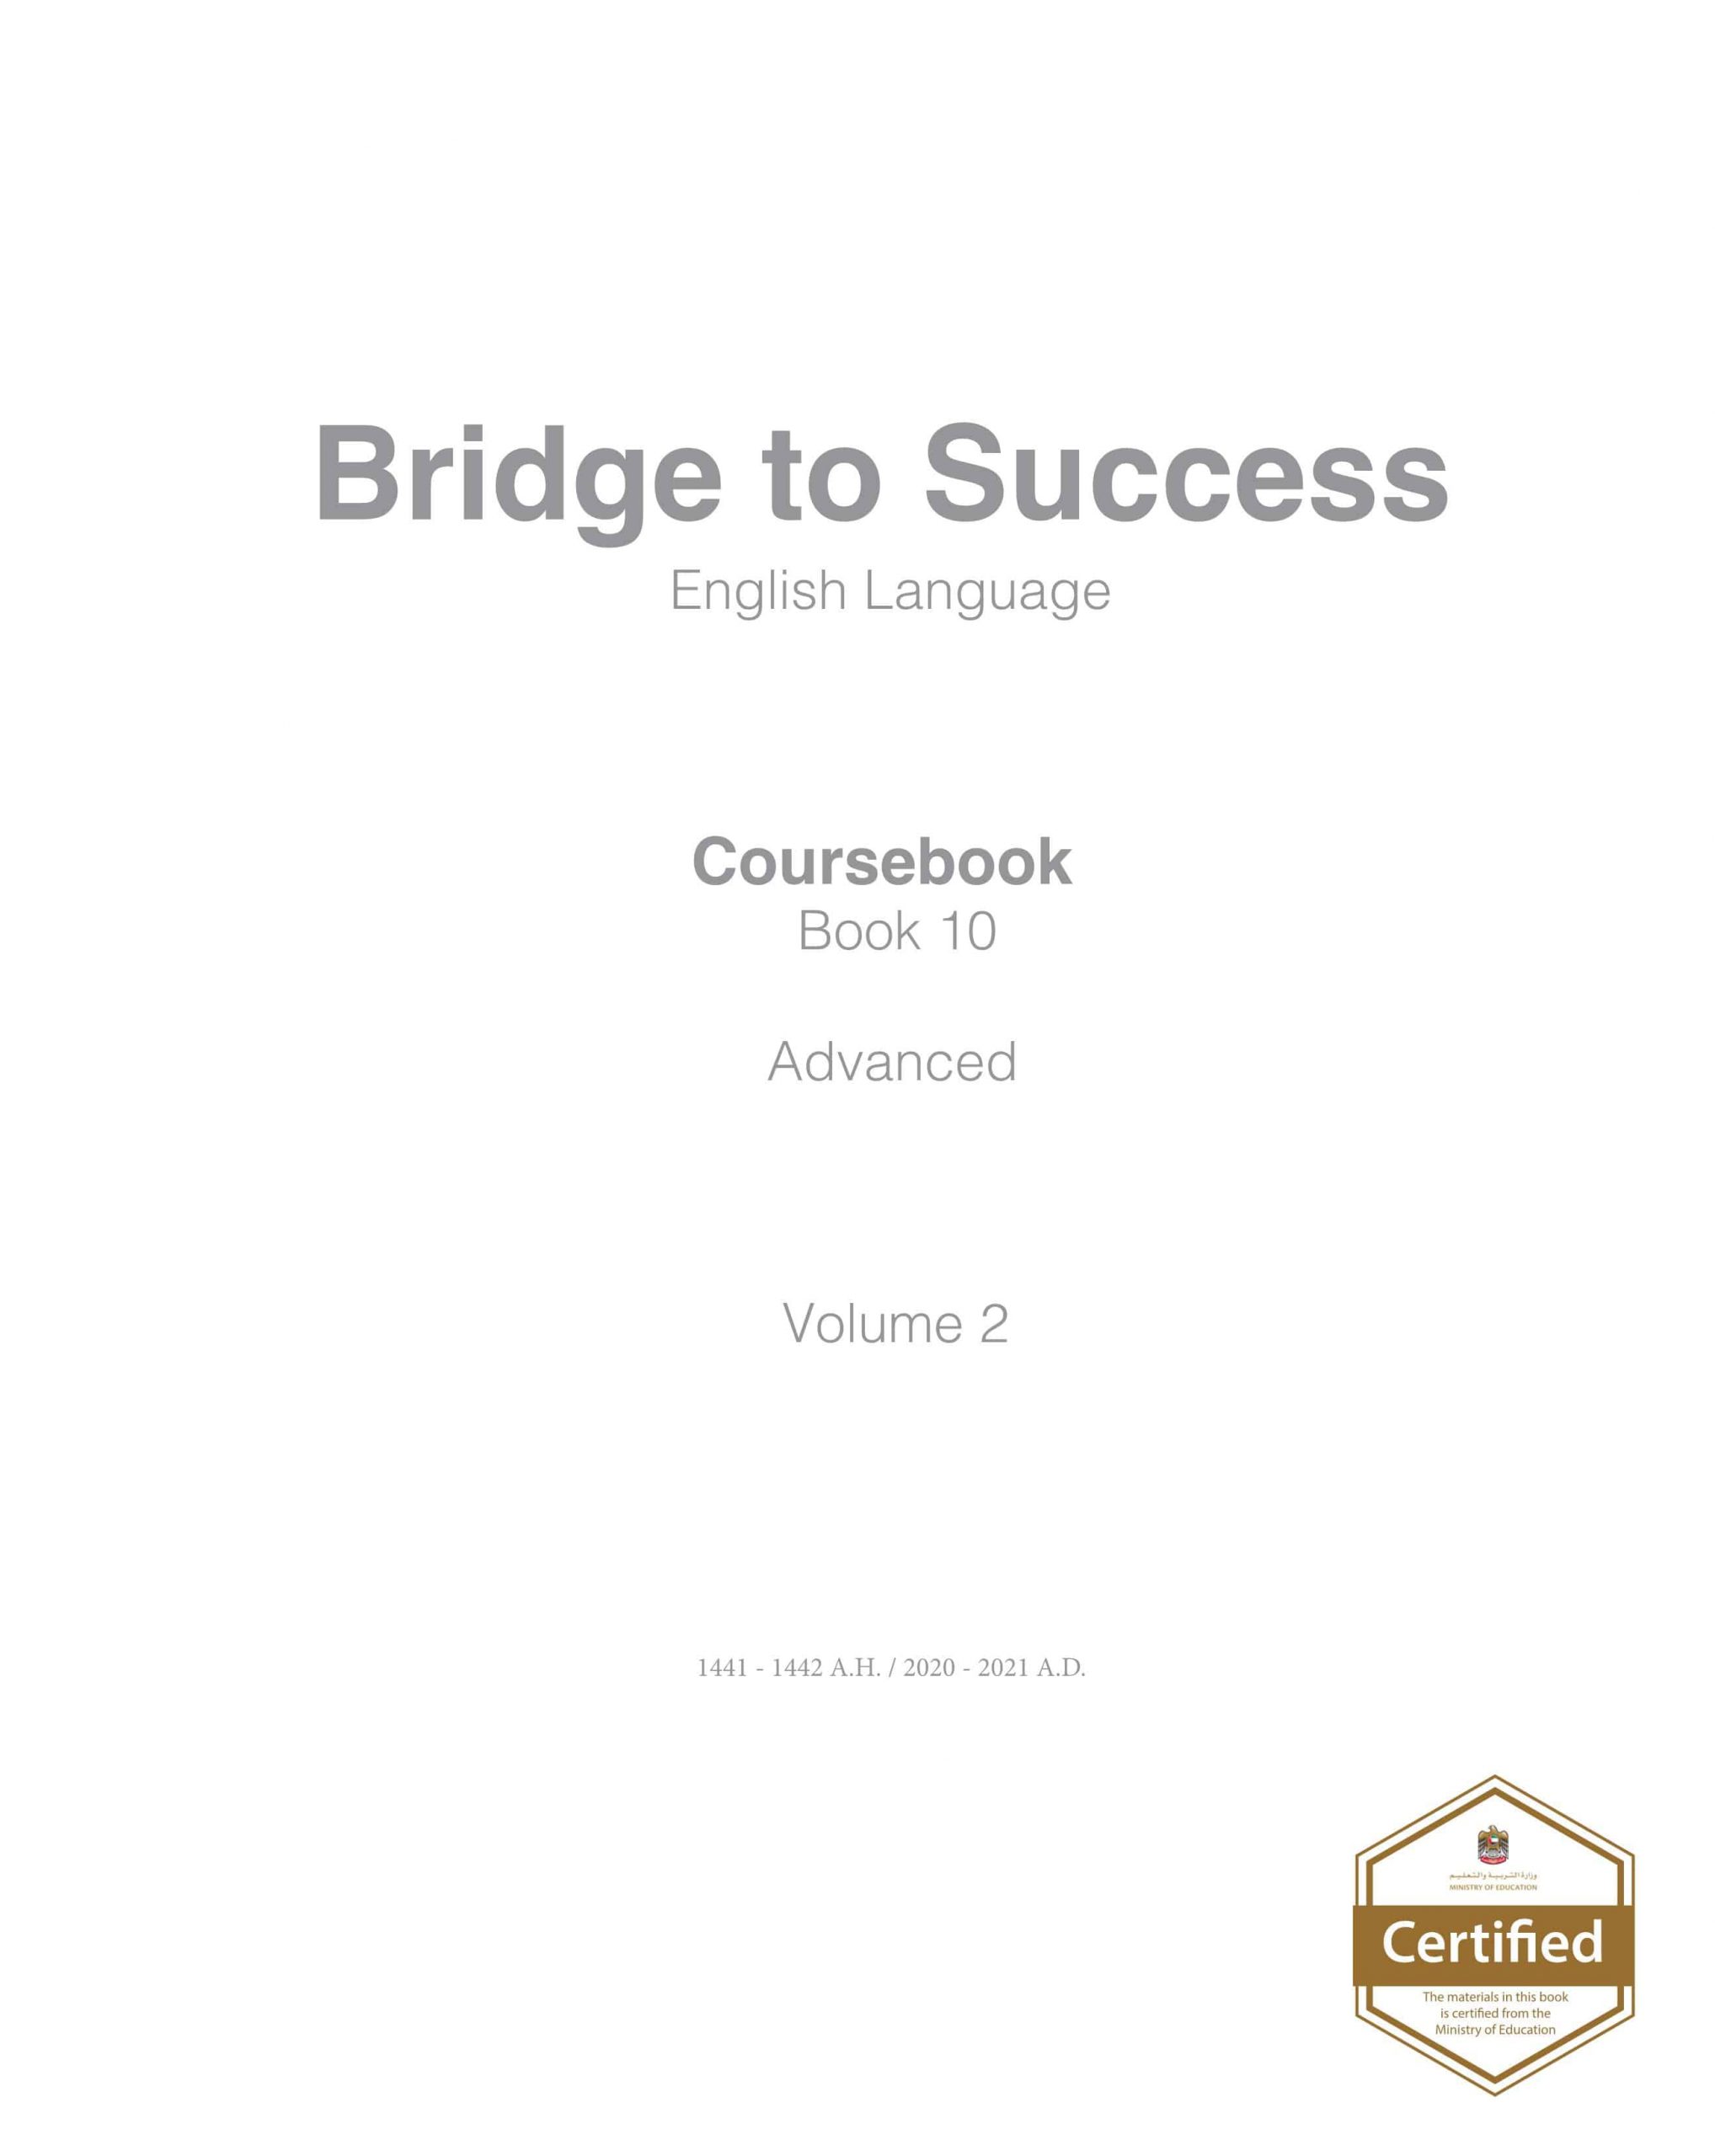 كتاب الطالب Coursebook الفصل الدراسي الثاني 2020-2021 الصف العاشر مادة اللغة الانجليزية 